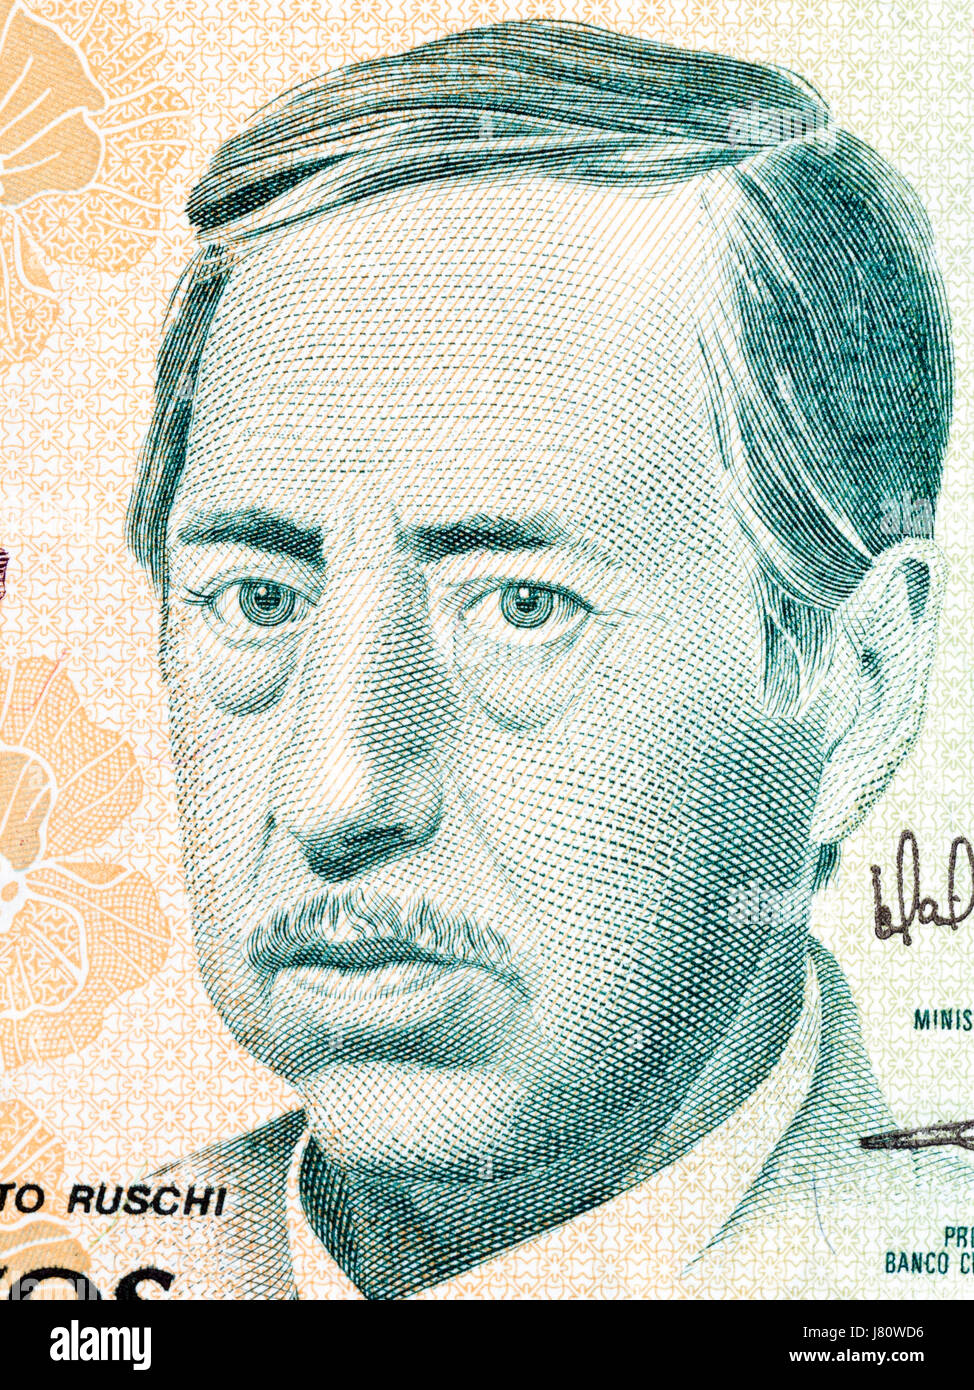 Augusto Ruschi portrait de l'argent brésilien Banque D'Images